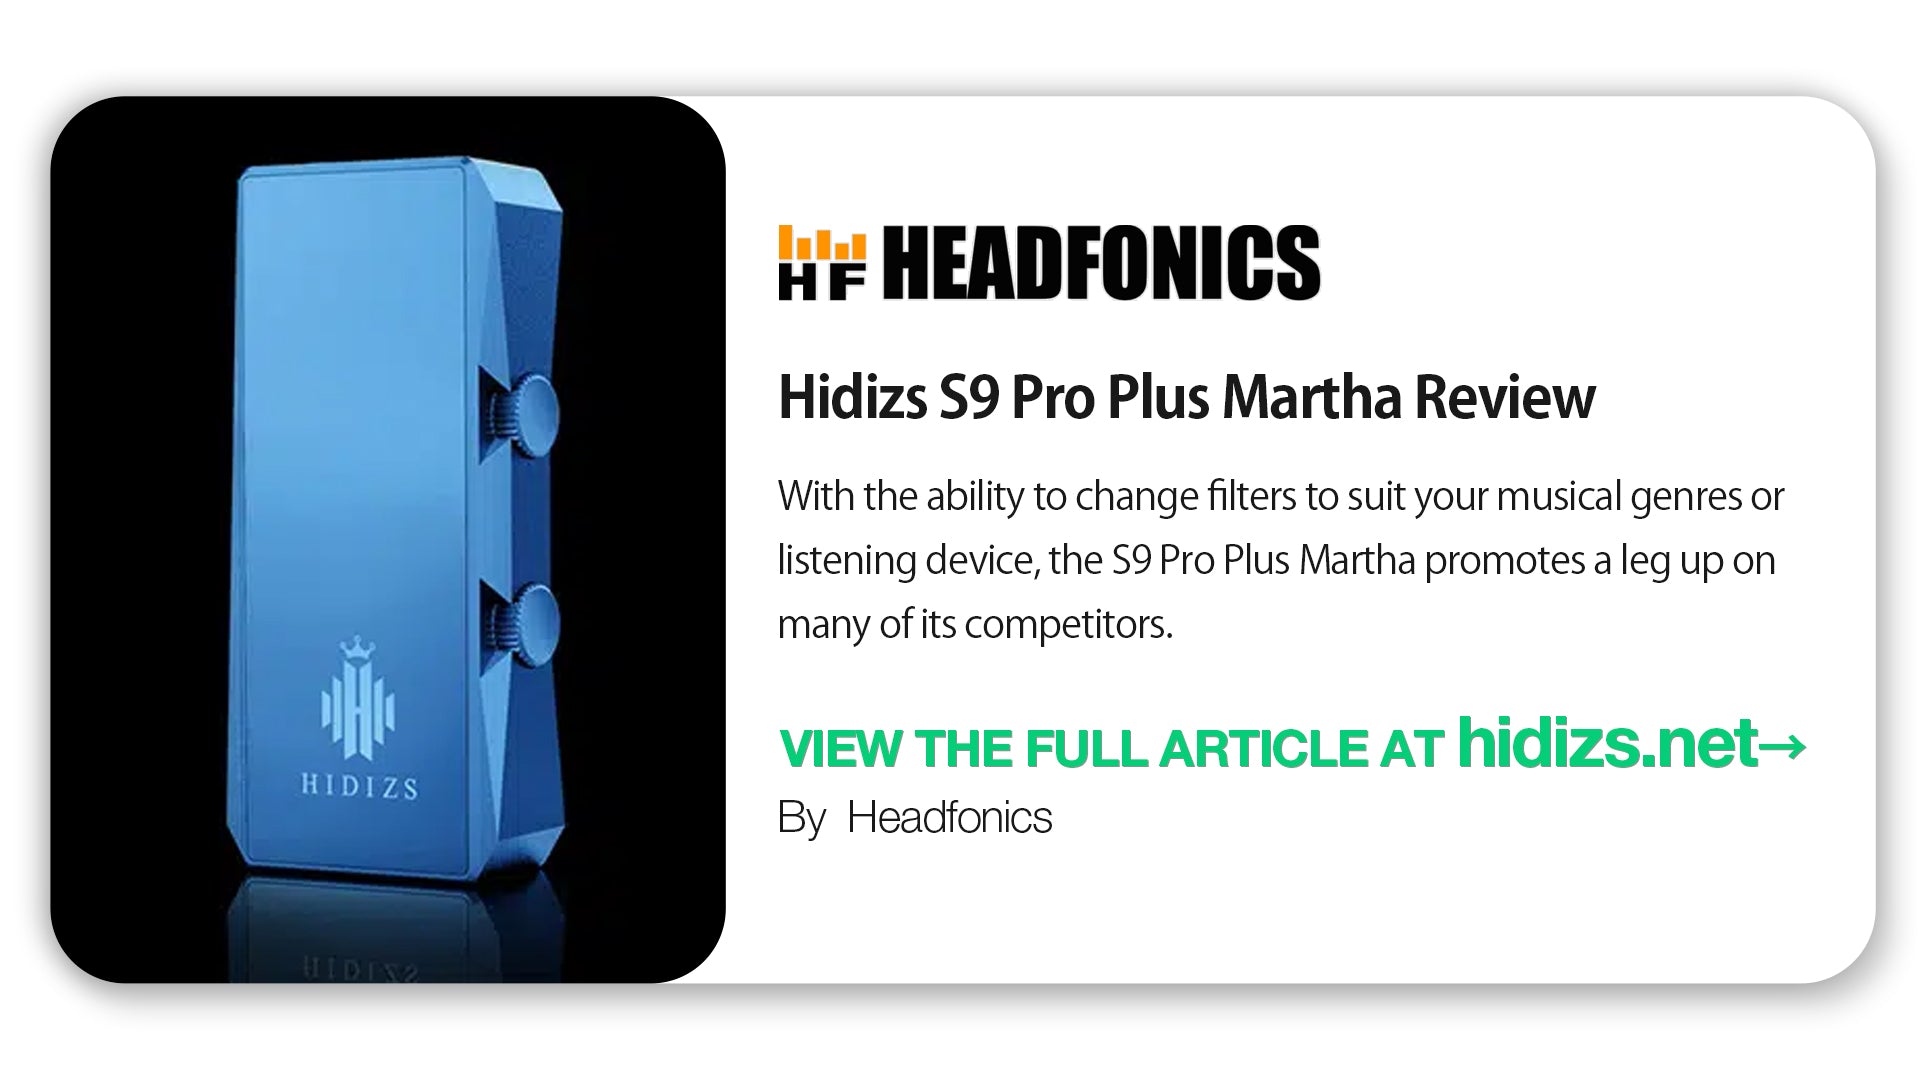 HIDIZS S9 Pro Plus Martha Review - Headfonics